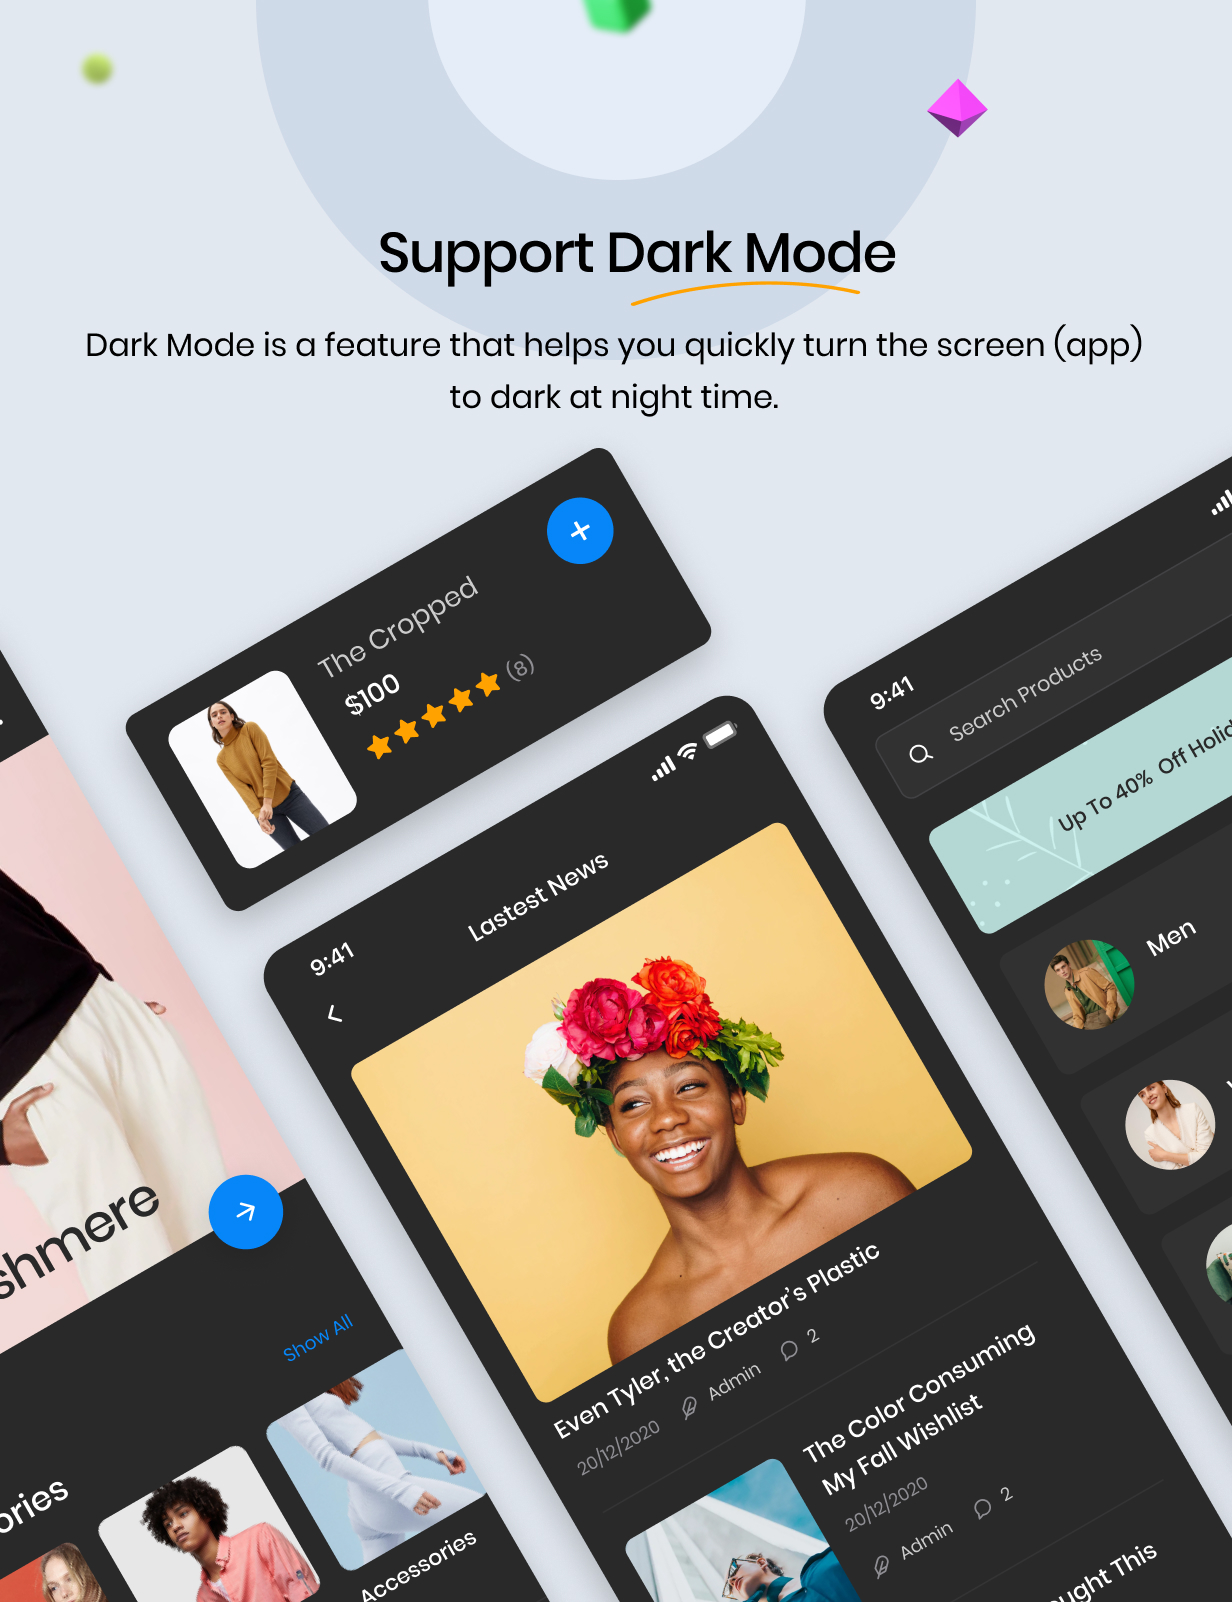 Support Dark Mode